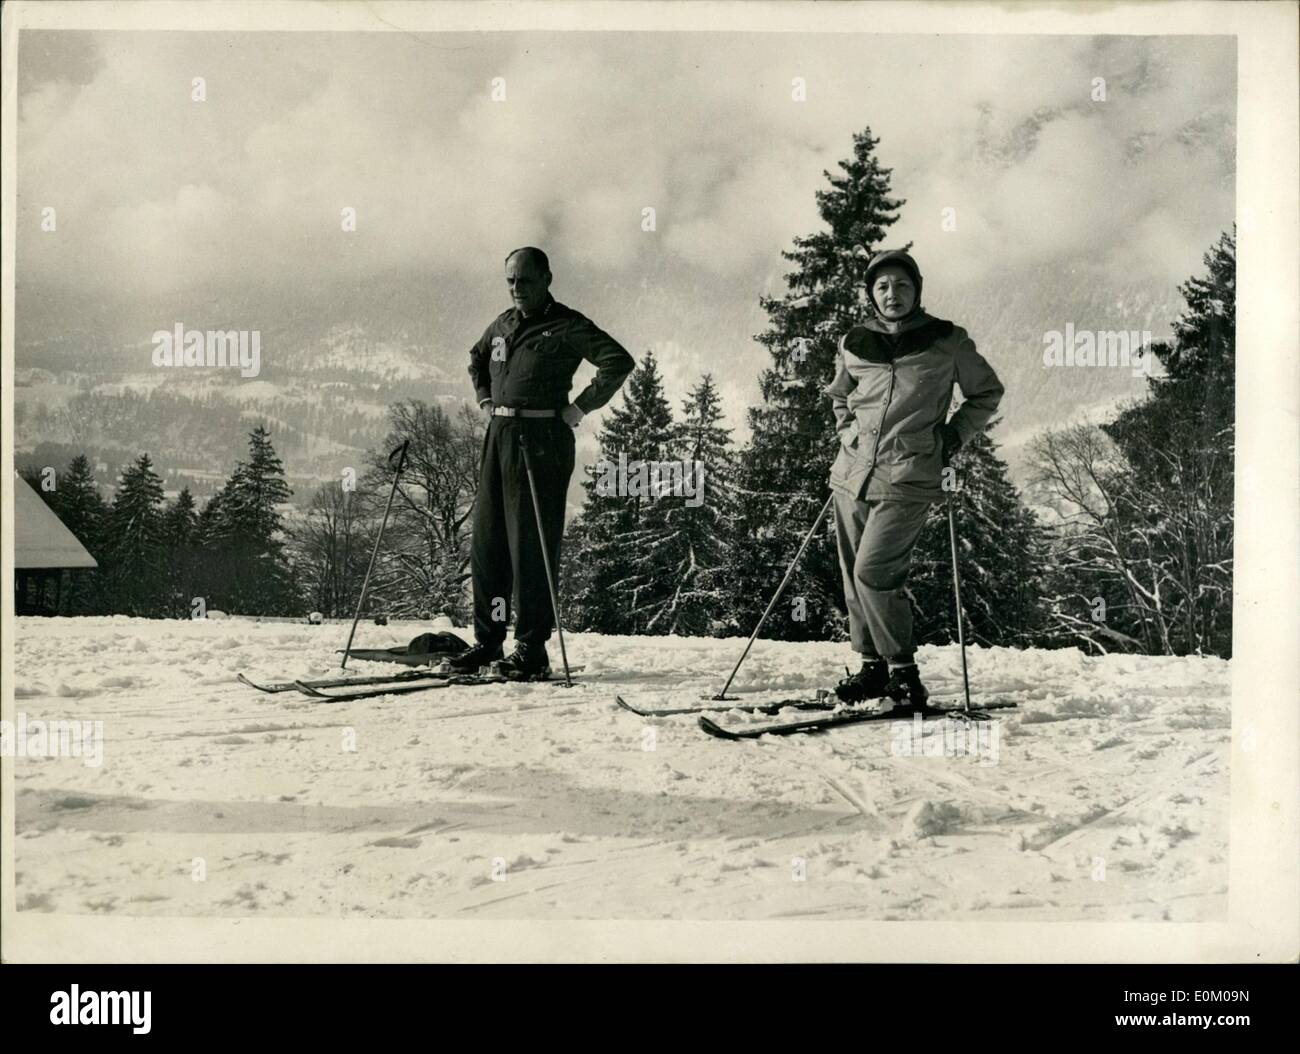 01 janv., 1953 - S.H.A.P.E. En vacances au commandant général Bidgway Ski-Ing Garmisoh va : Général Ridgway, commandant suprême des Banque D'Images